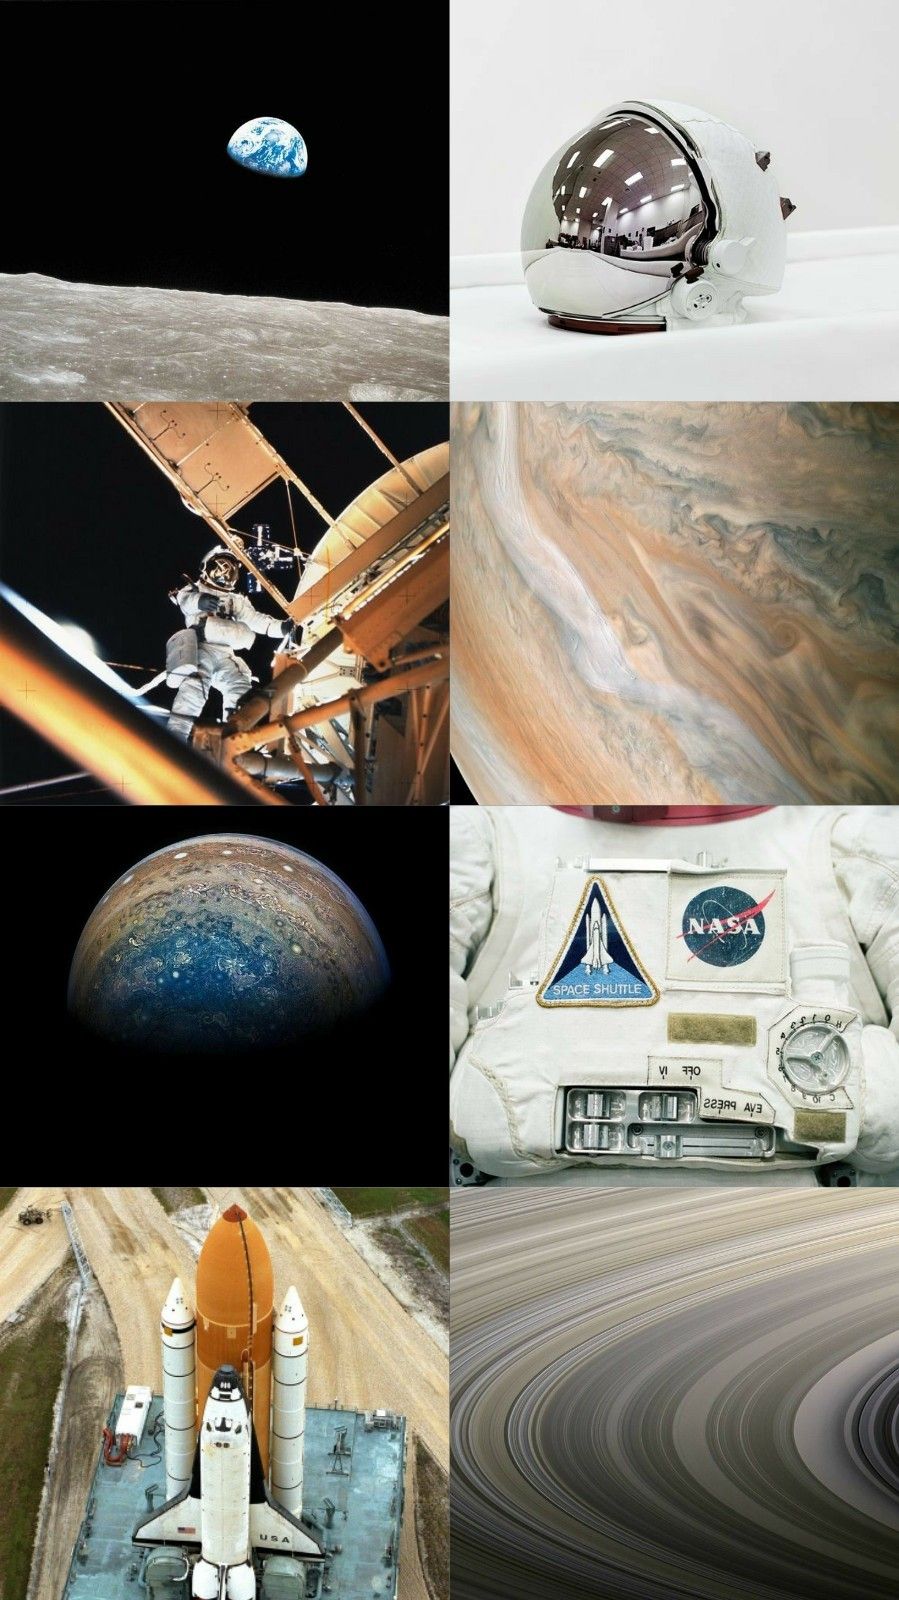 Space shuttle Wallpaper 4K, NASA, Enterprise, Atmosphere